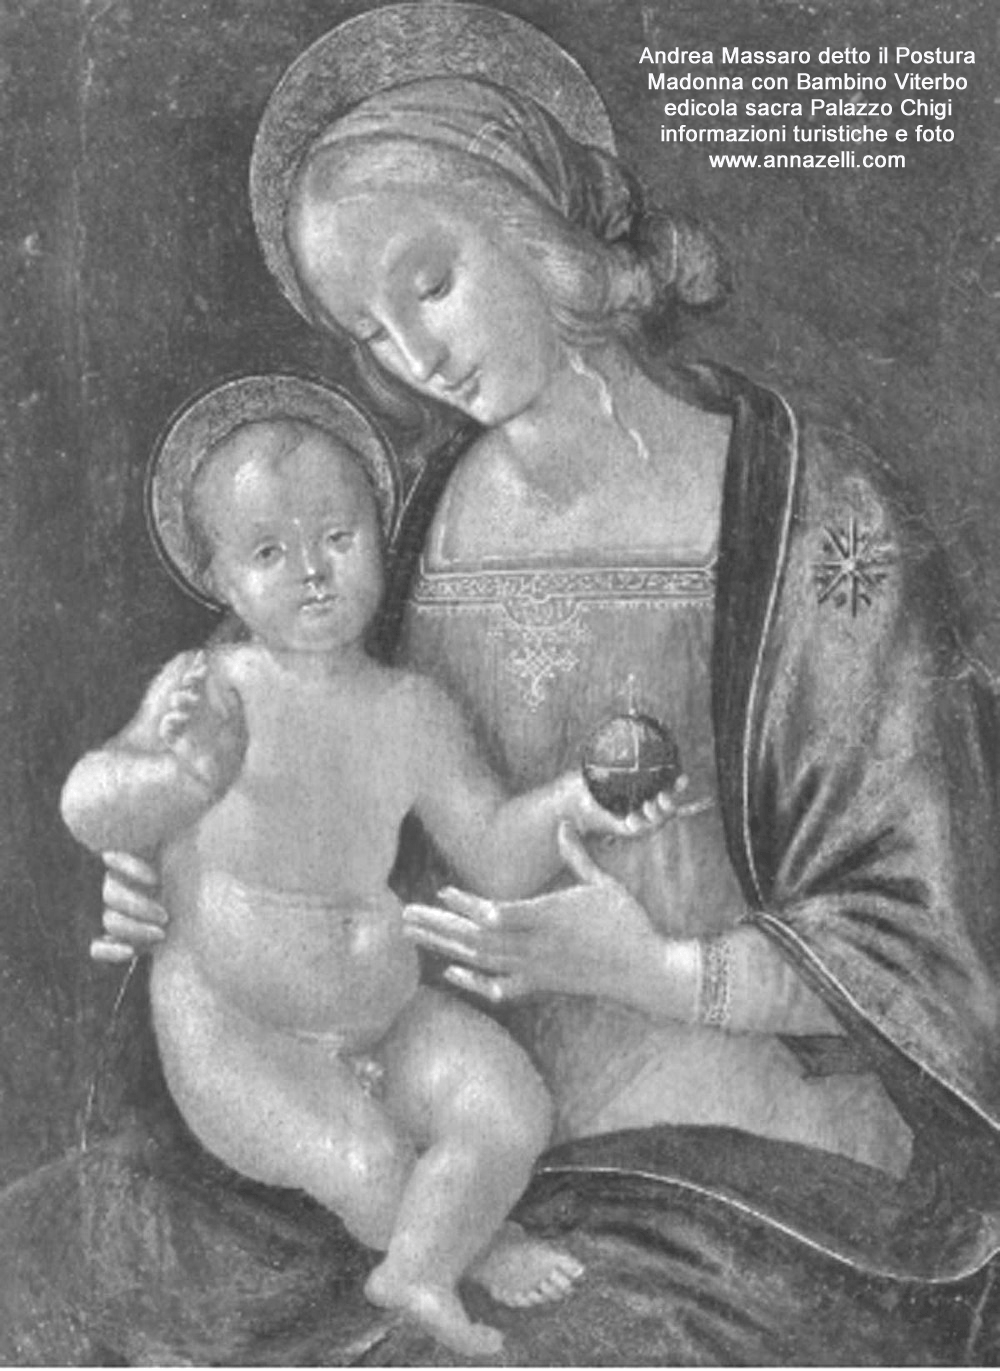 Edicola sacra madonna con bambino di andrea massaro detto il postura palazzo chigi via chigi viterbo